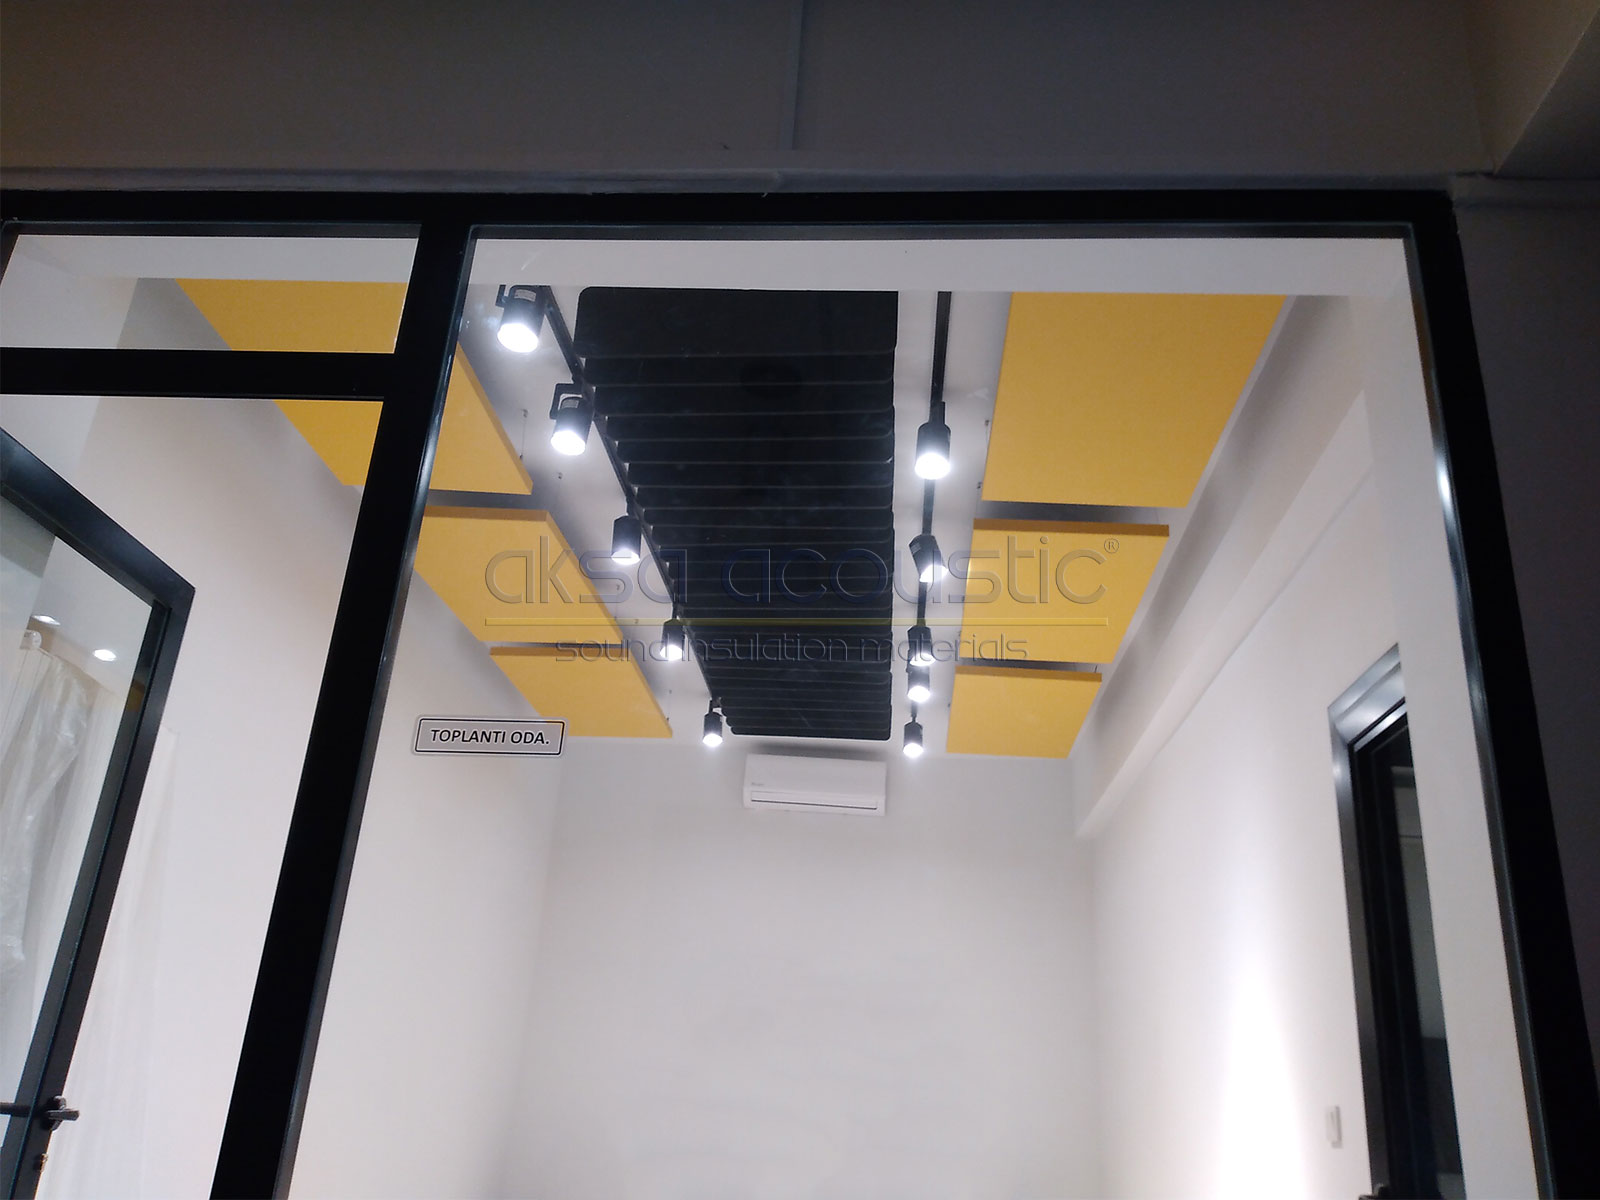 birleşik fırça akustik tavan paneli ses yalıtımı panelleri